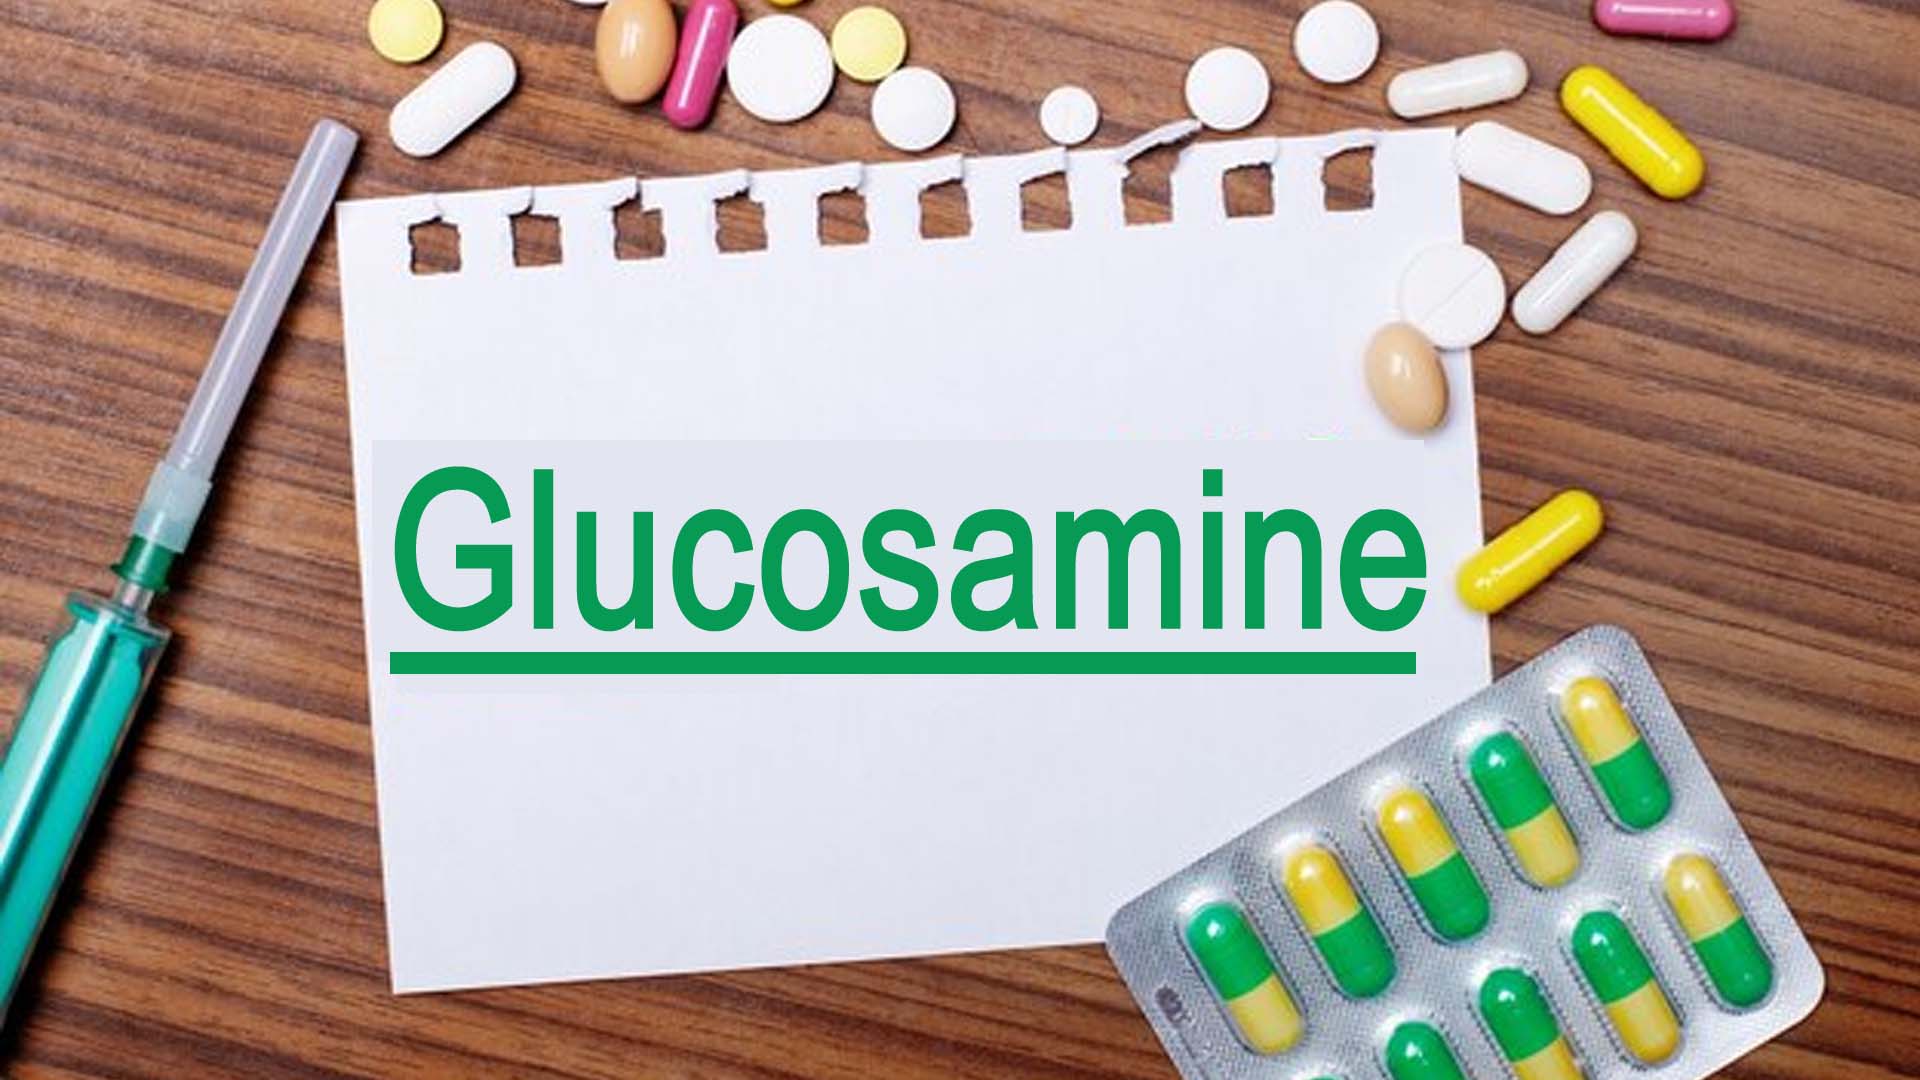 Glucosamine written on notepad